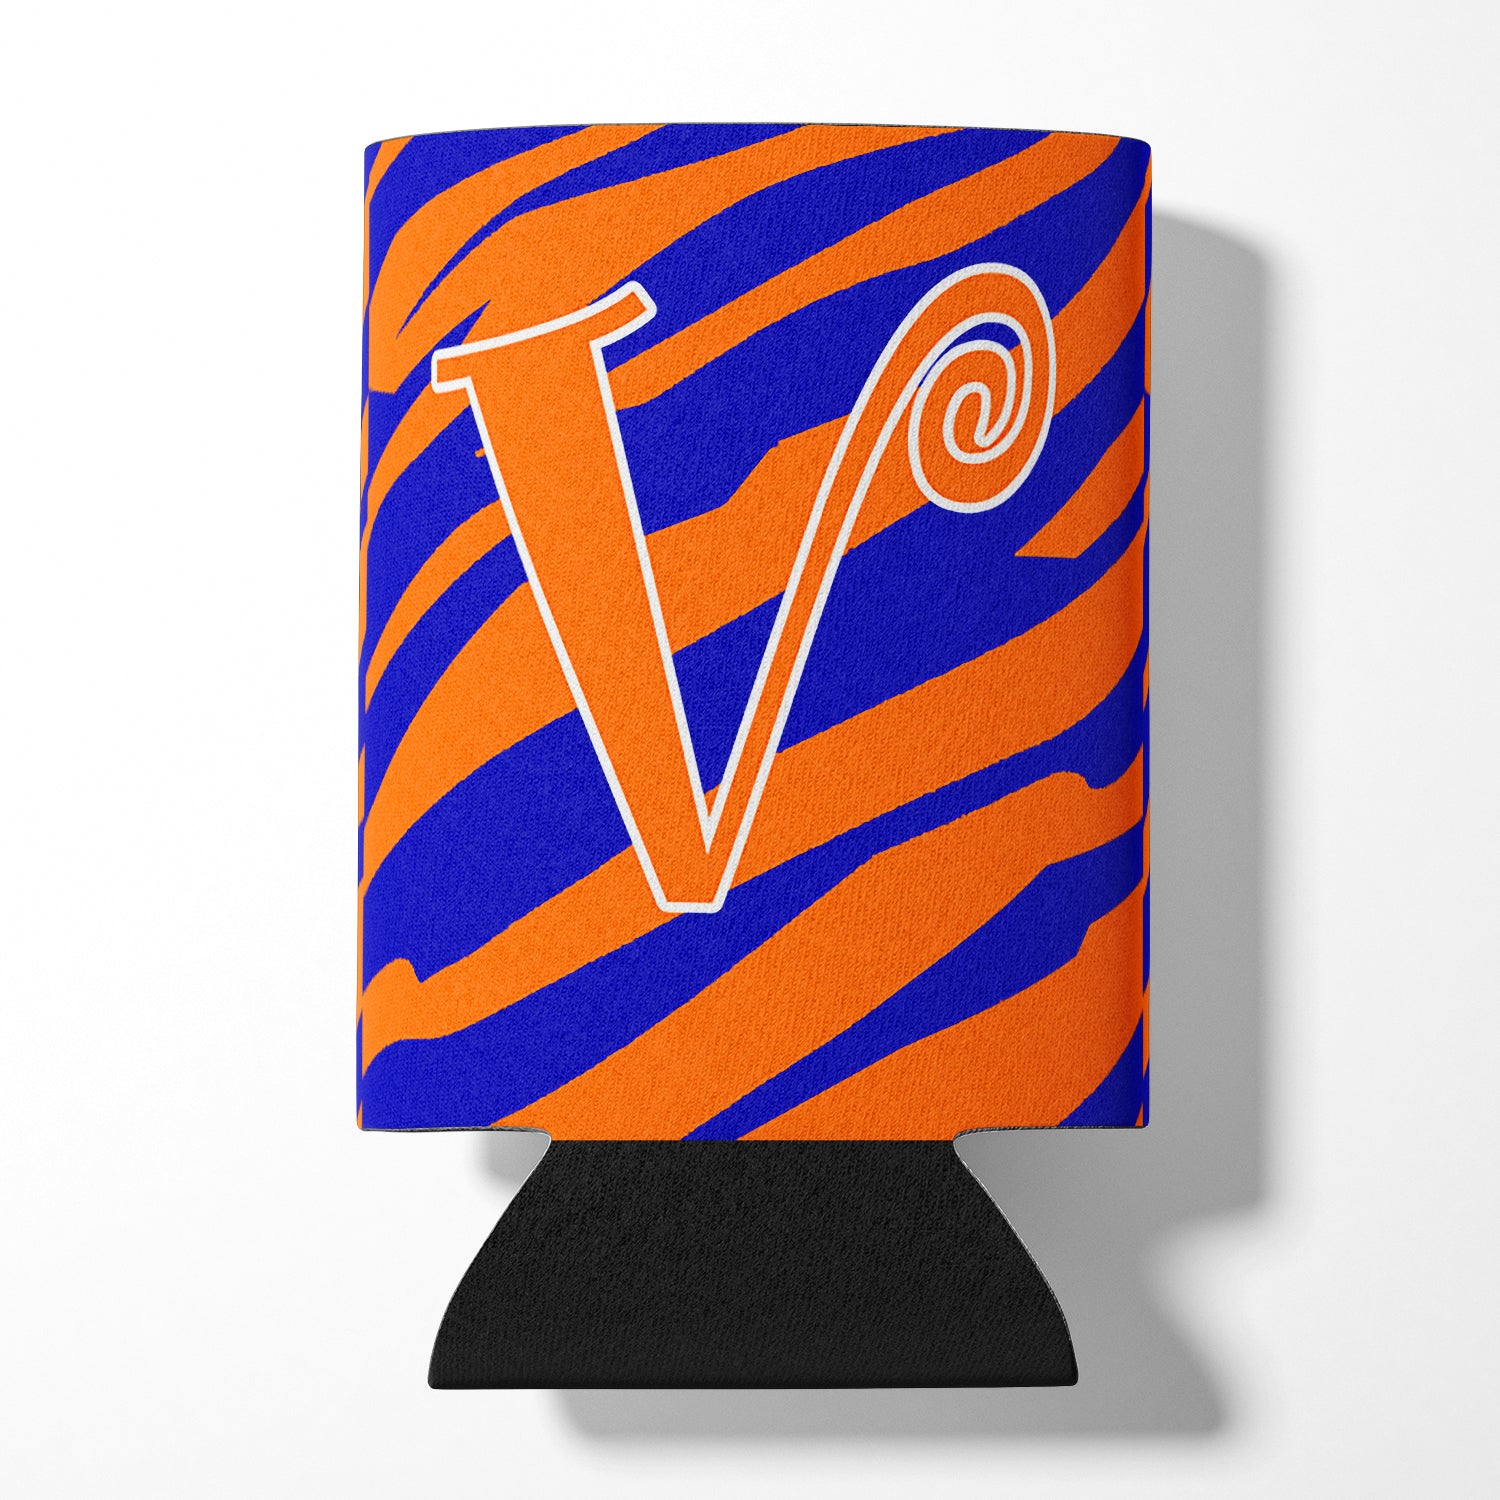 Monogramme initial de la lettre V - Tiger Stripe Blue and Orange Can Beverage Insulator Hugger